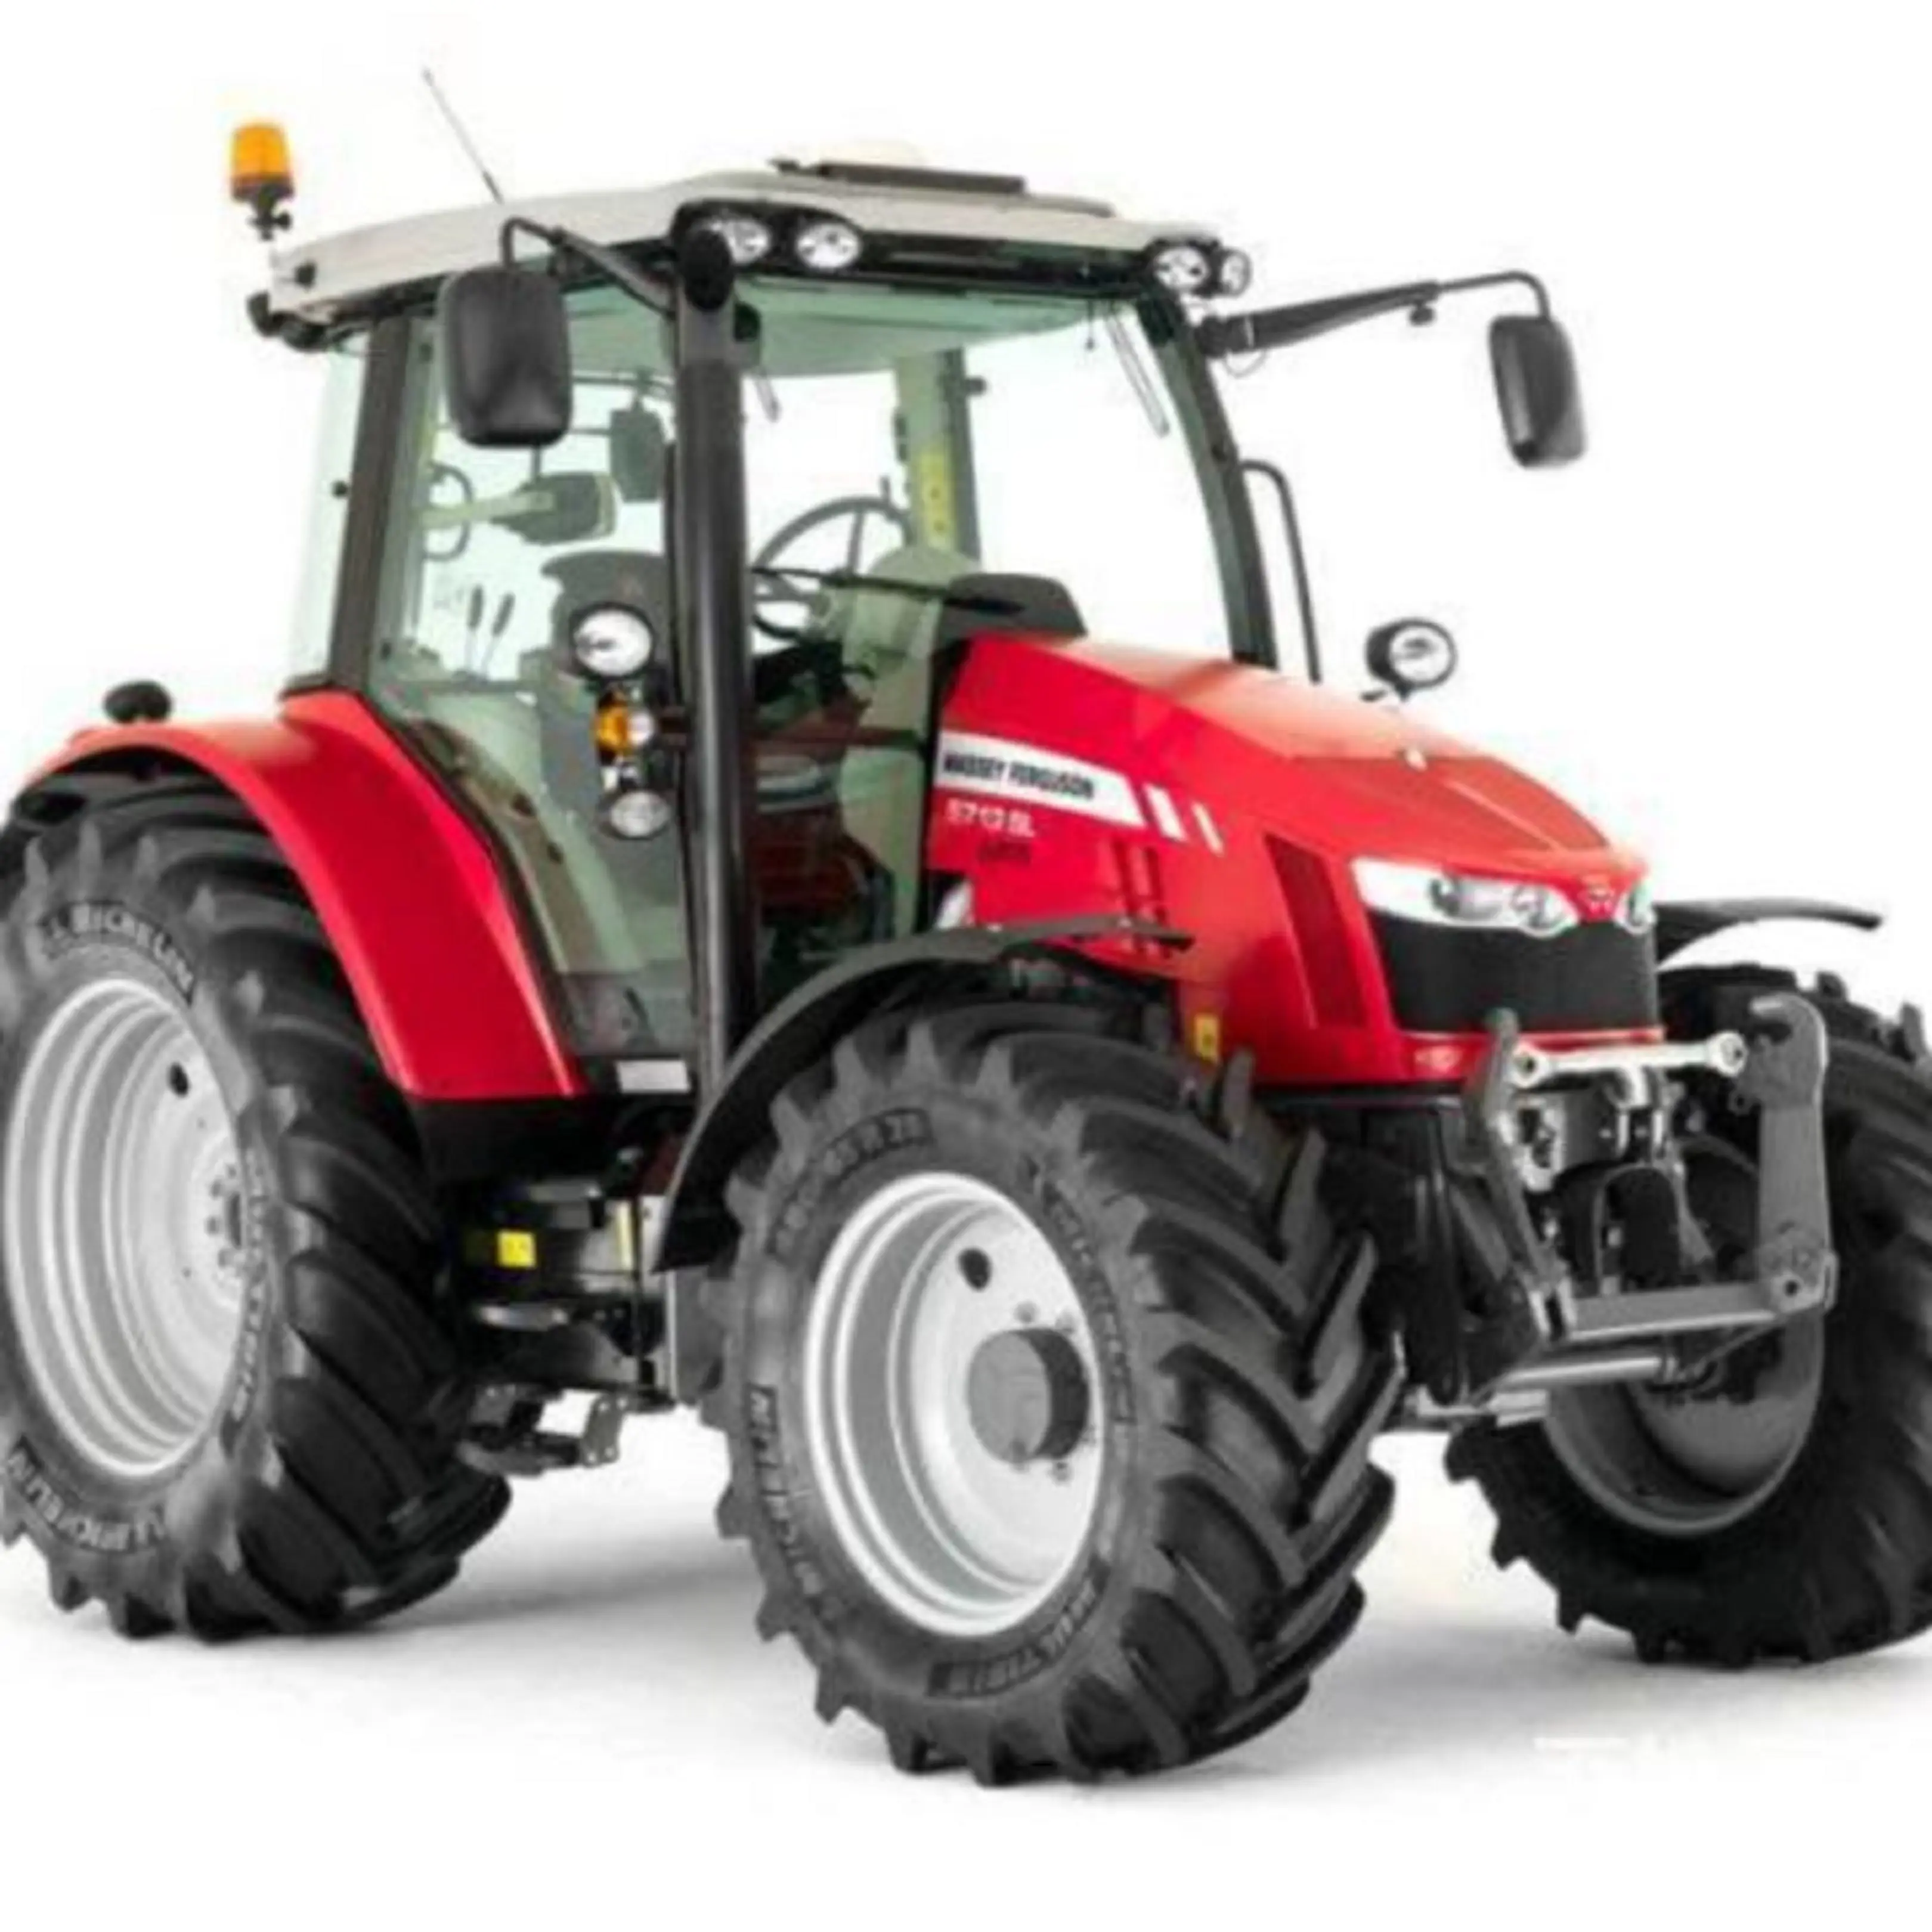 Tracteur Massey Ferguson 290 , MF 385 et MF 390 bon marché machine agricole tracteur agricole à vendre